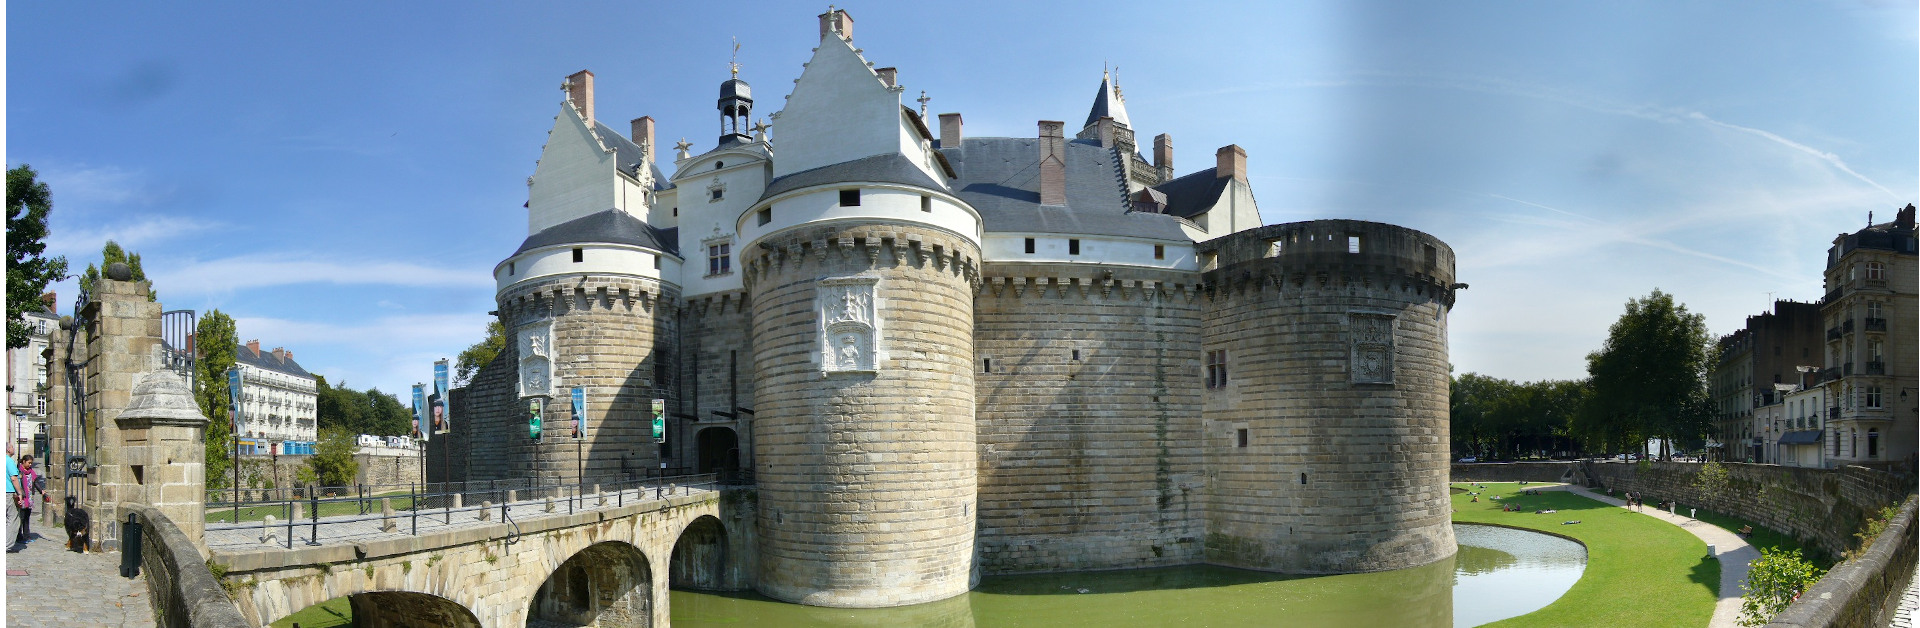 Nantes, le Chateau des Ducs de Bretagne